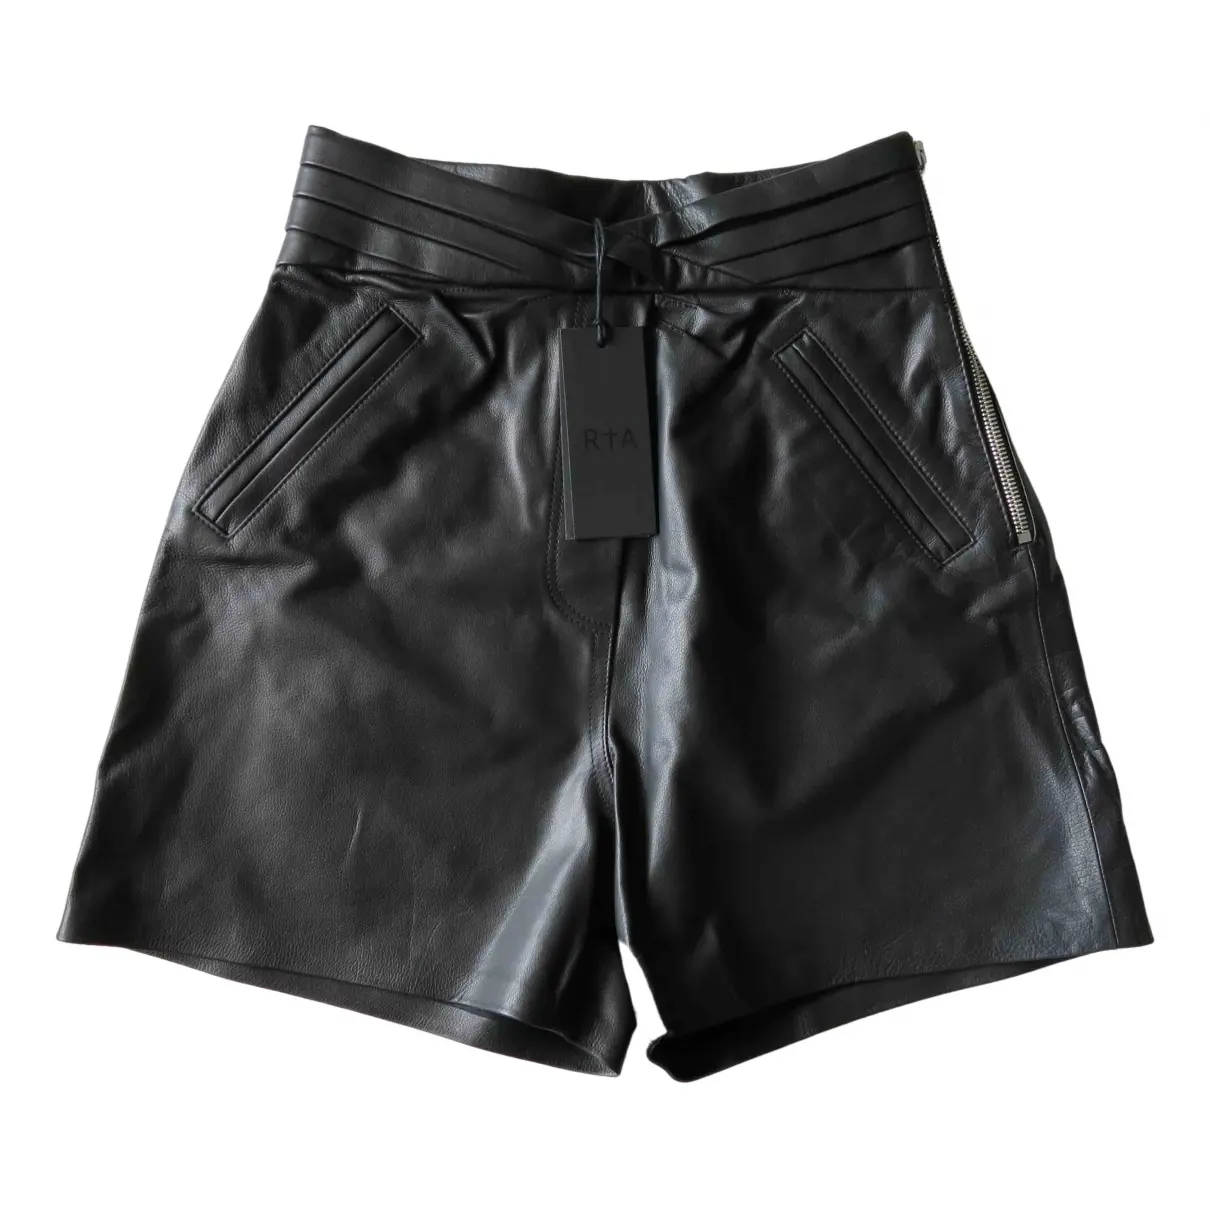 Leather shorts Rta